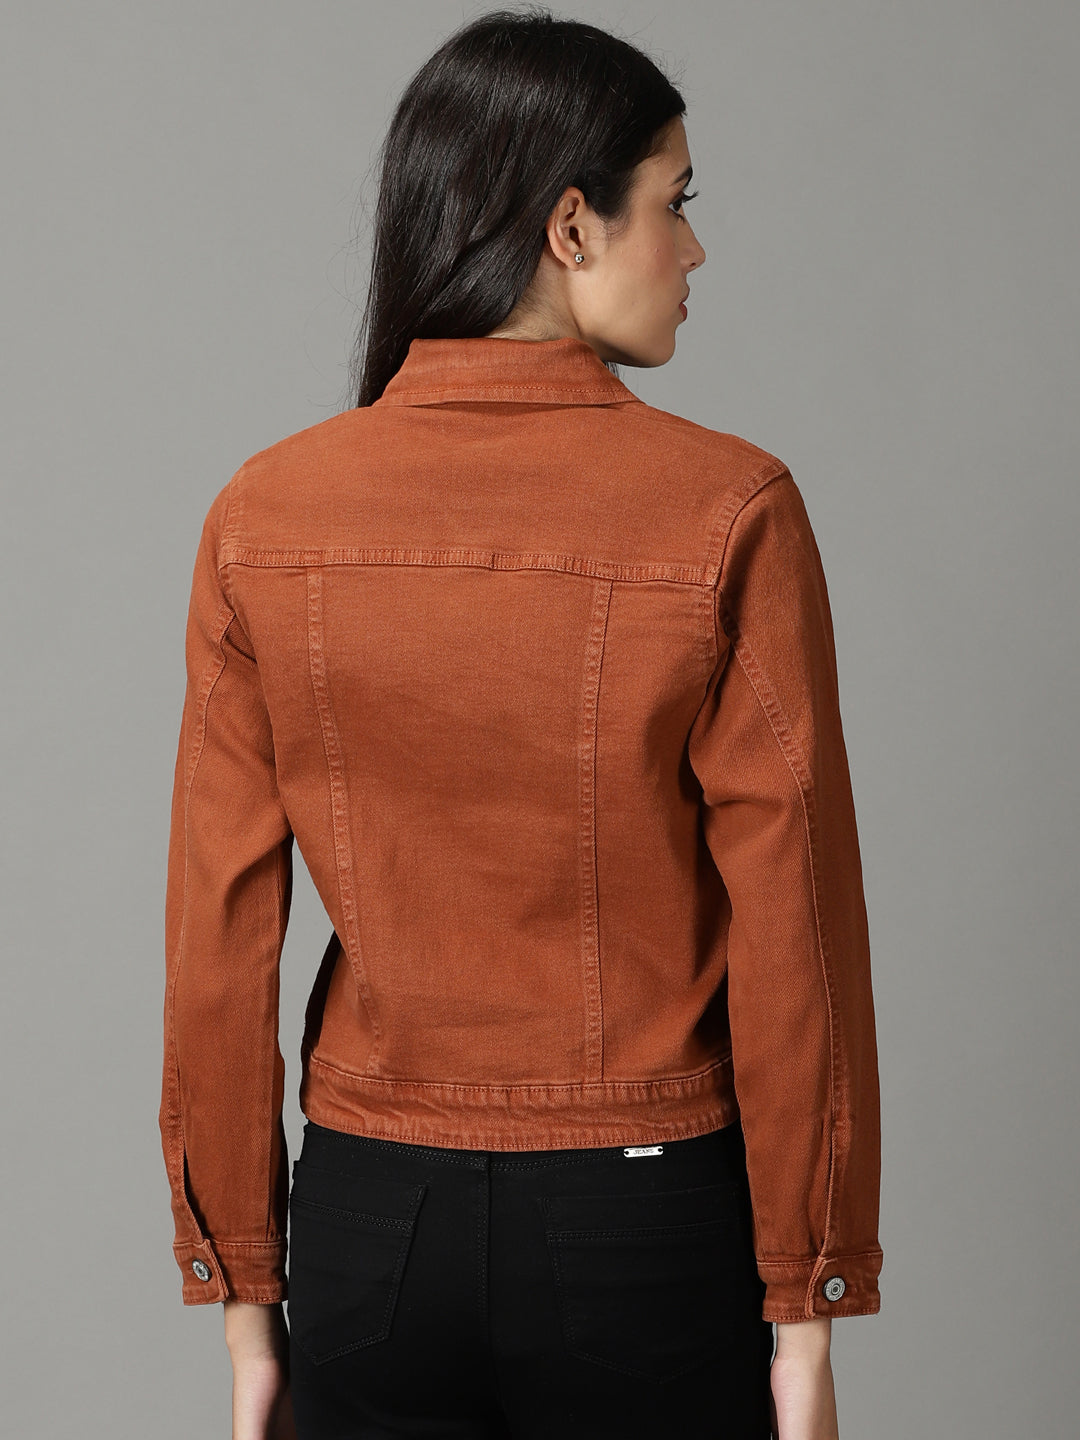 Women's Rust Solid Open Front Jacket